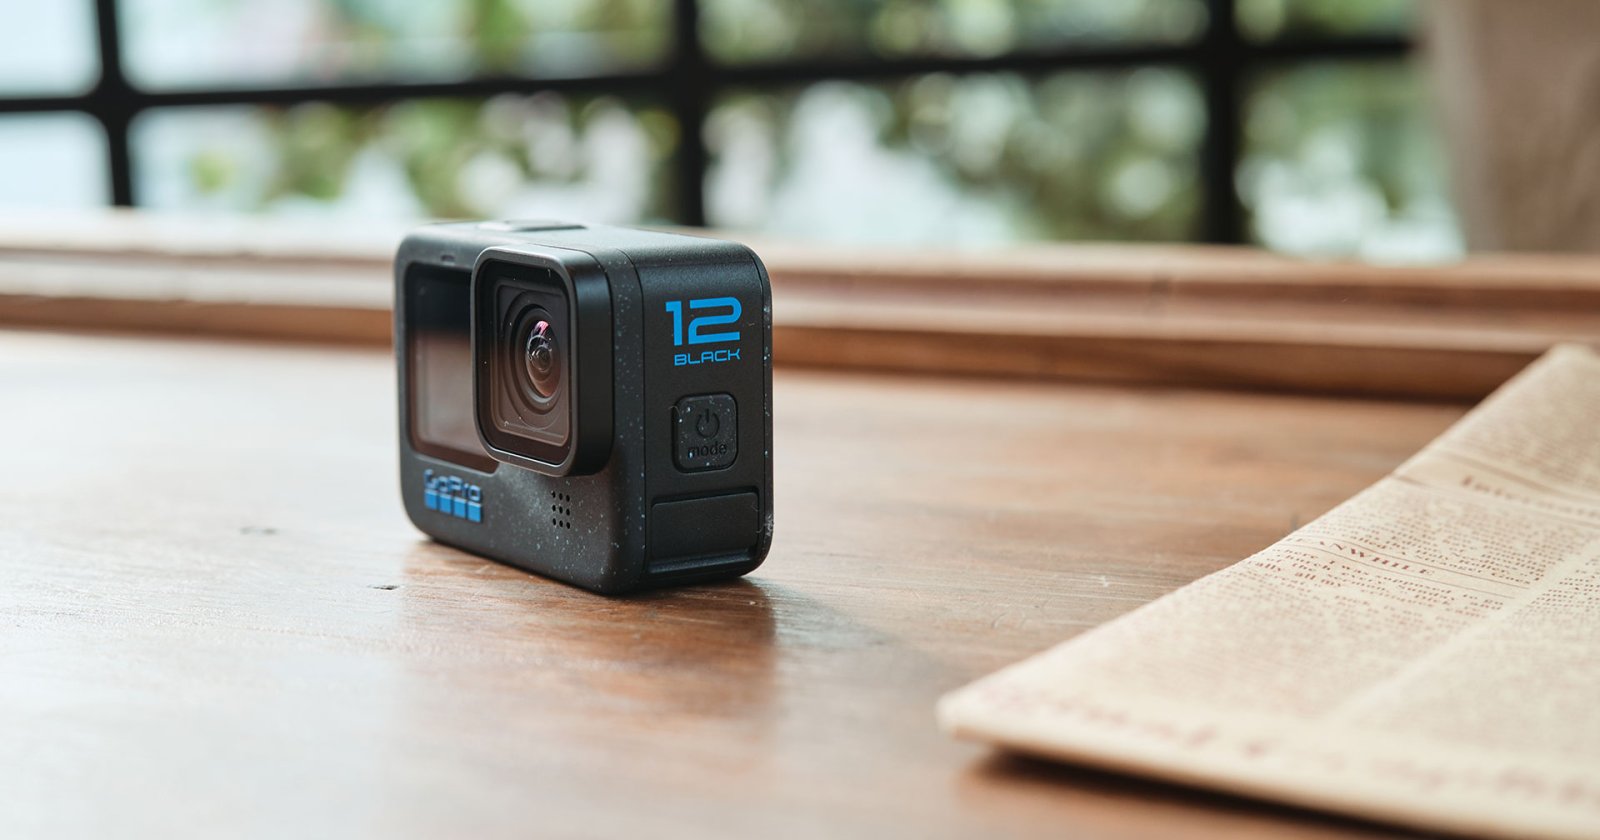 [รีวิว] GoPro Hero 12 Black กล้องแอ็กชันที่ดีกว่าเดิม แบตอึด ต่อ AirPods เป็นไมค์ได้ด้วย!